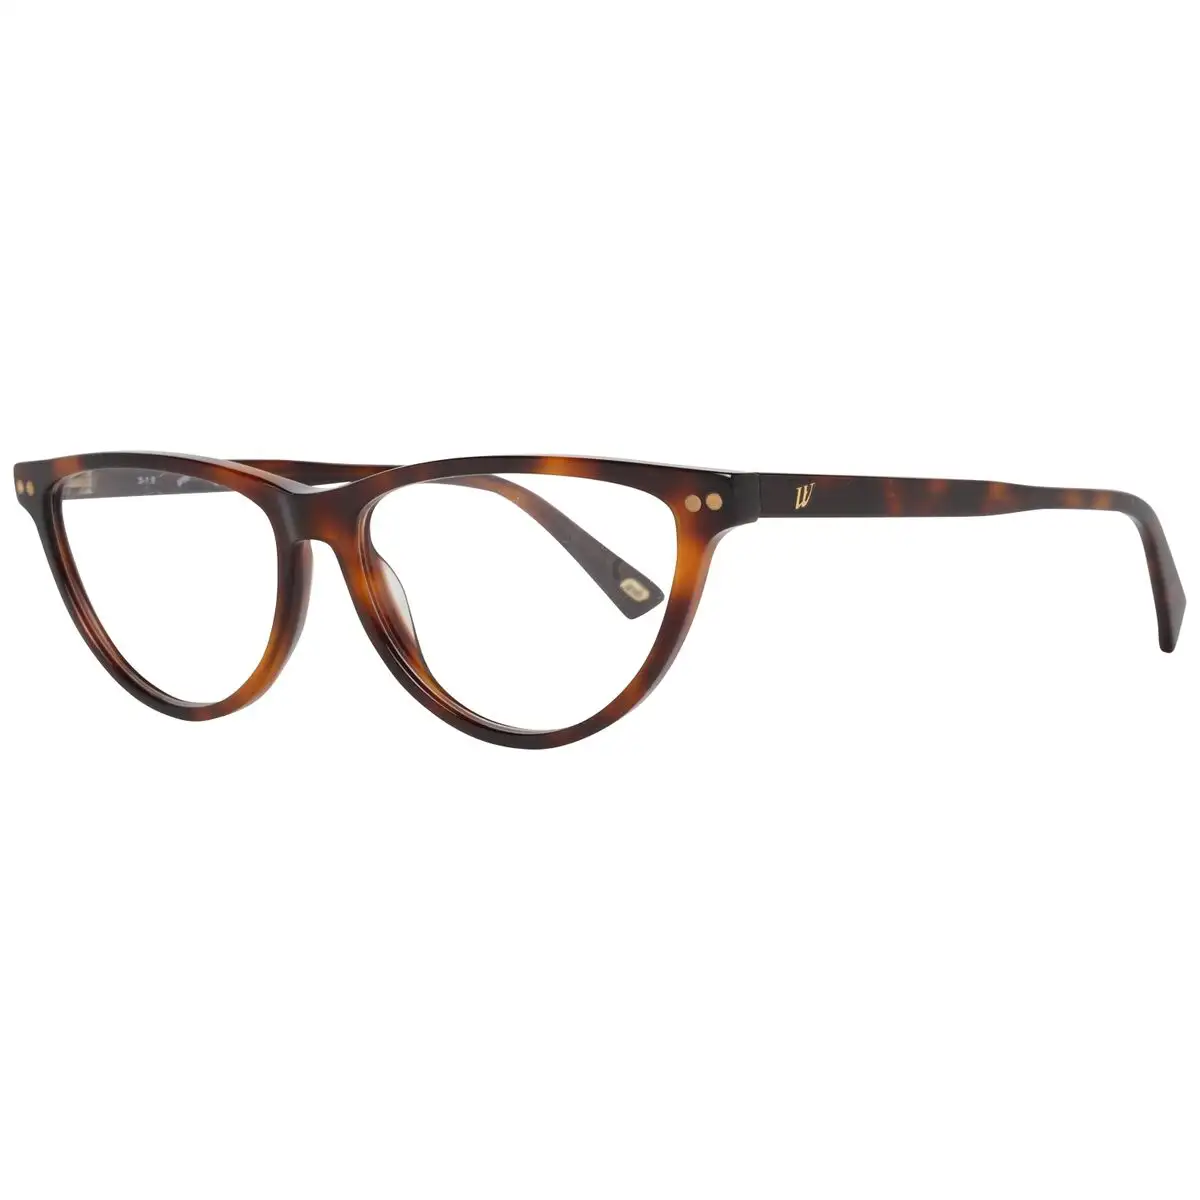 Monture de lunettes femme web eyewear we5305 55052_2030. DIAYTAR SENEGAL - Là où Chaque Produit est une Trouvaille Unique. Découvrez notre boutique en ligne et trouvez des articles qui vous distinguent par leur originalité.